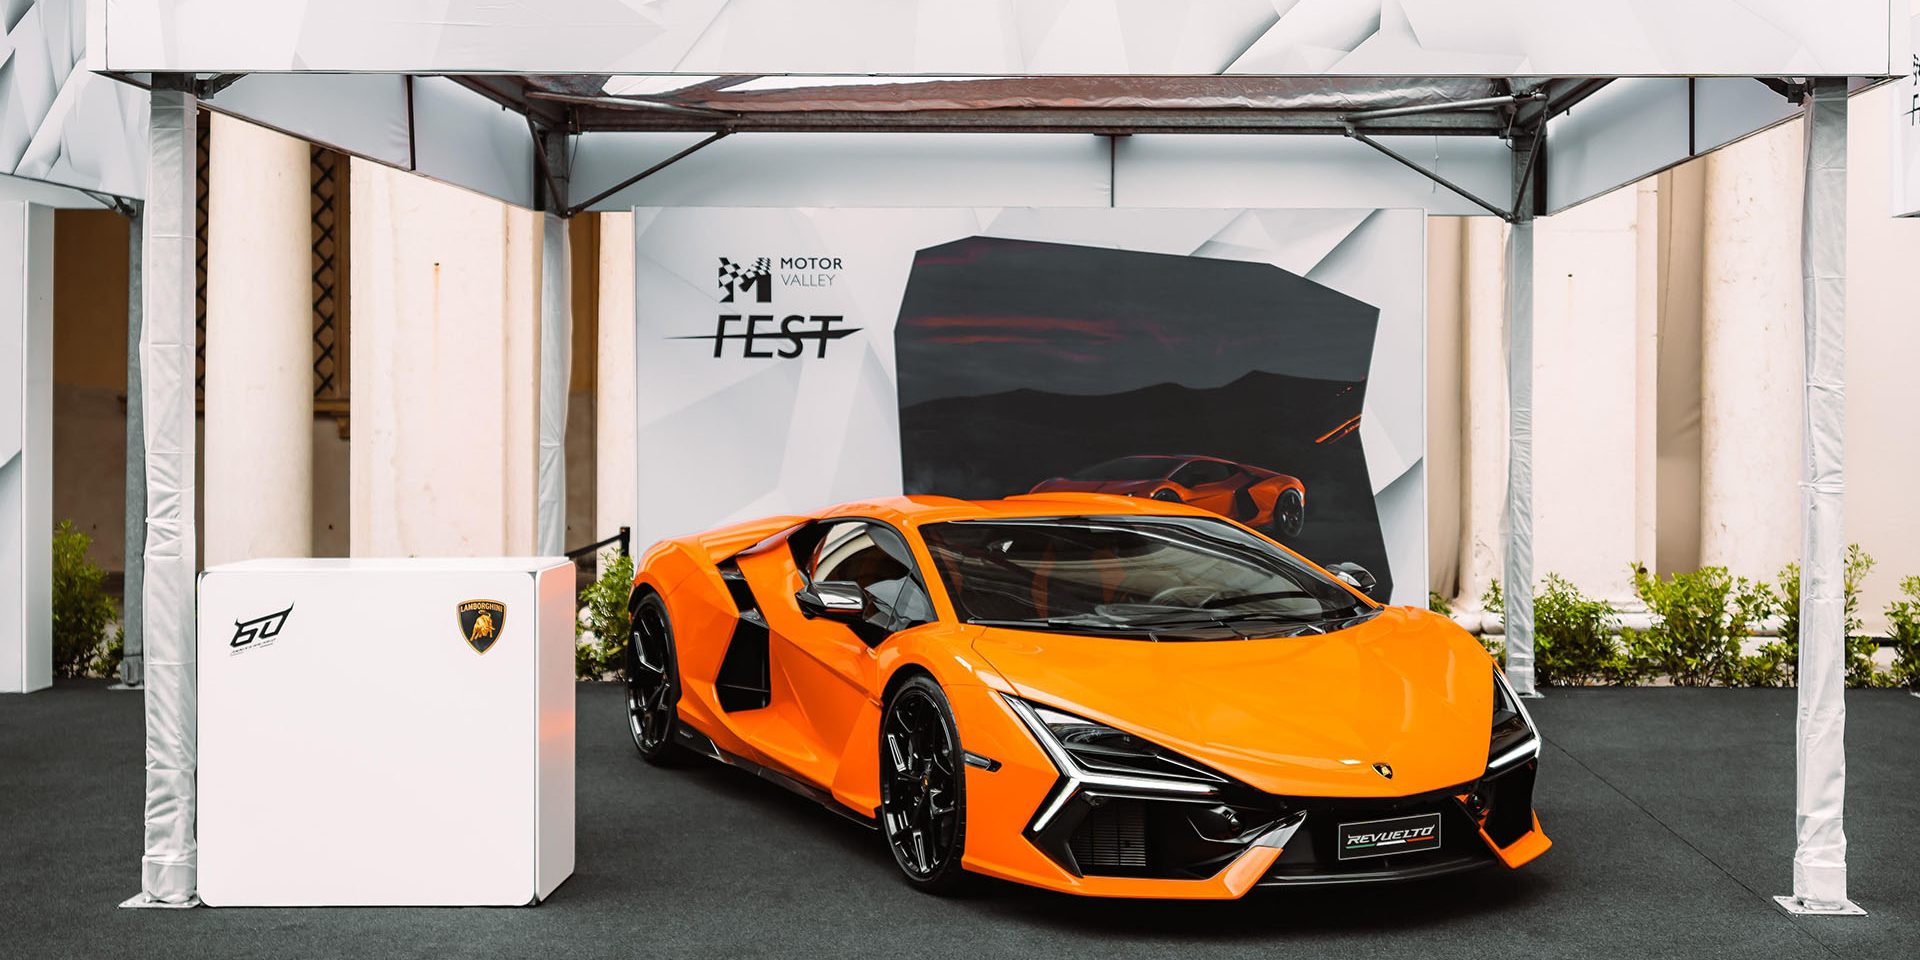 Automobili Lamborghini in the spotlight at Motor Valley Fest 2023